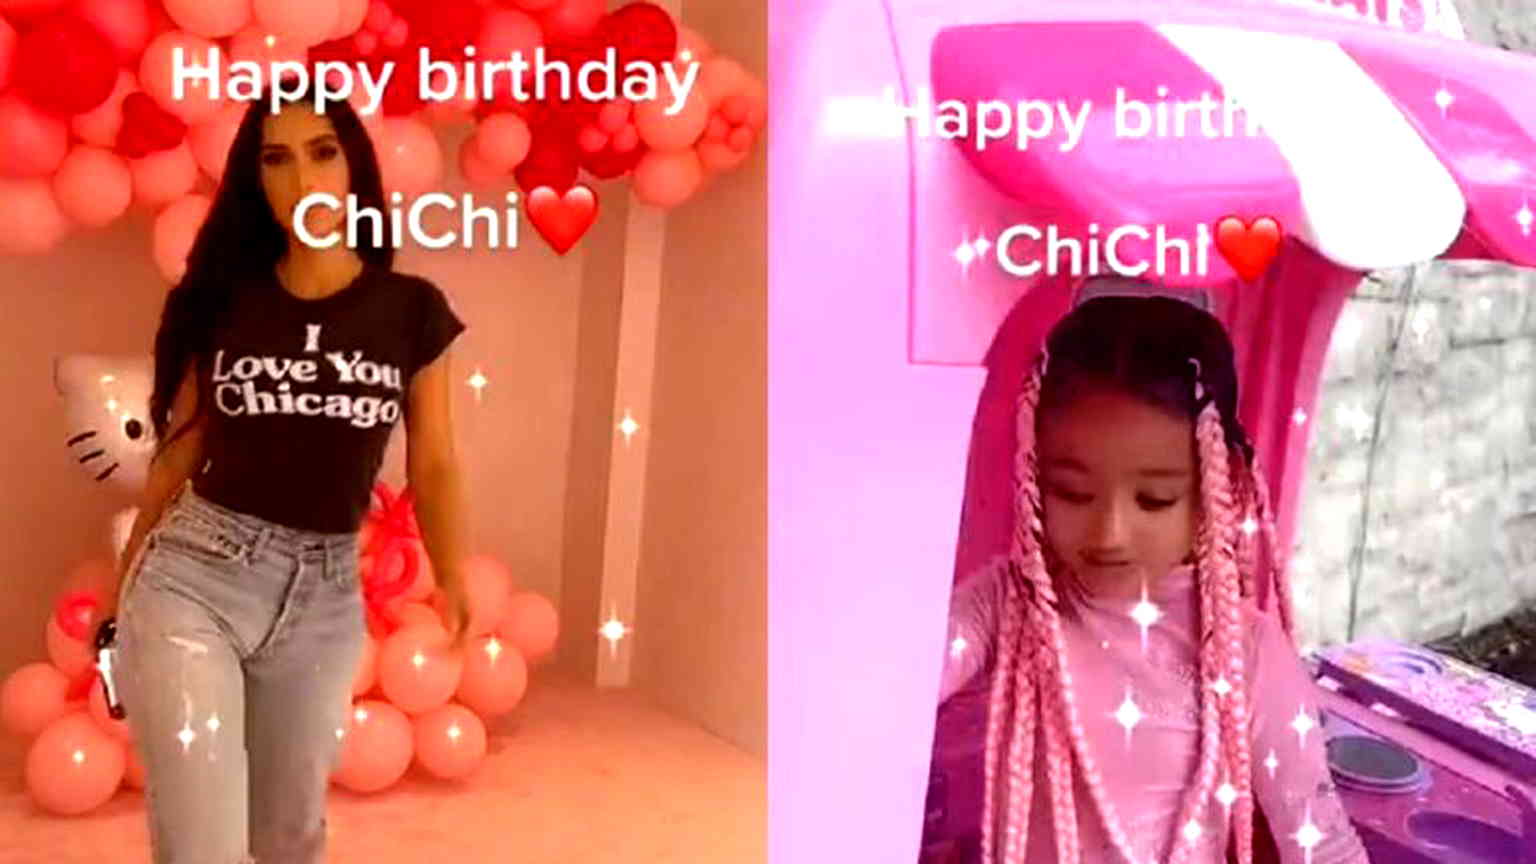 Kim Kardashian throws extravagant Hello Kitty-themed birthday party for daughter Chicago